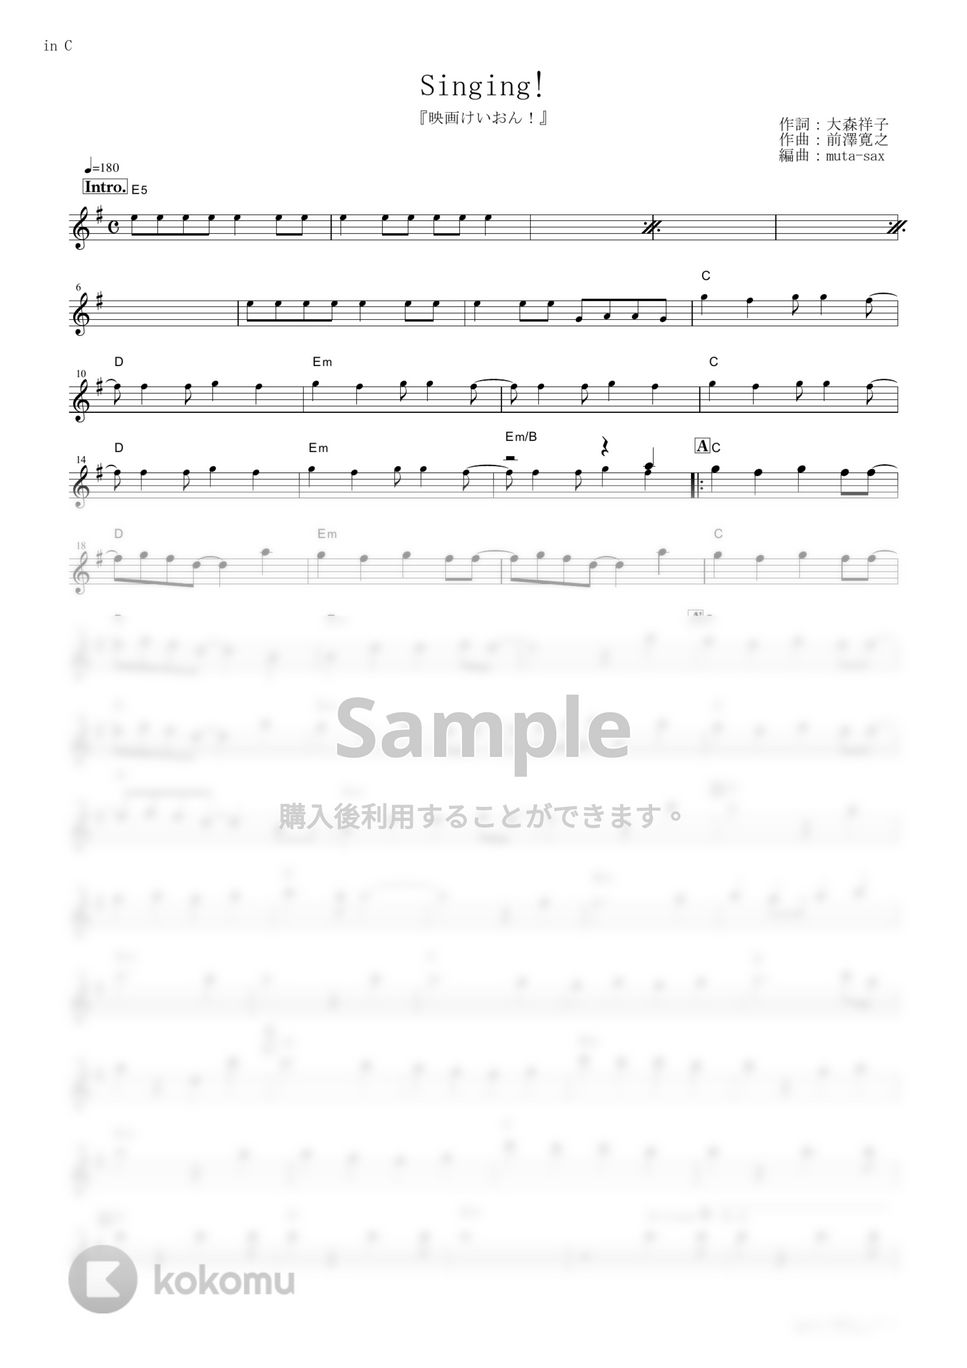 放課後ティータイム - Singing! (『映画けいおん！』 / in C) by muta-sax